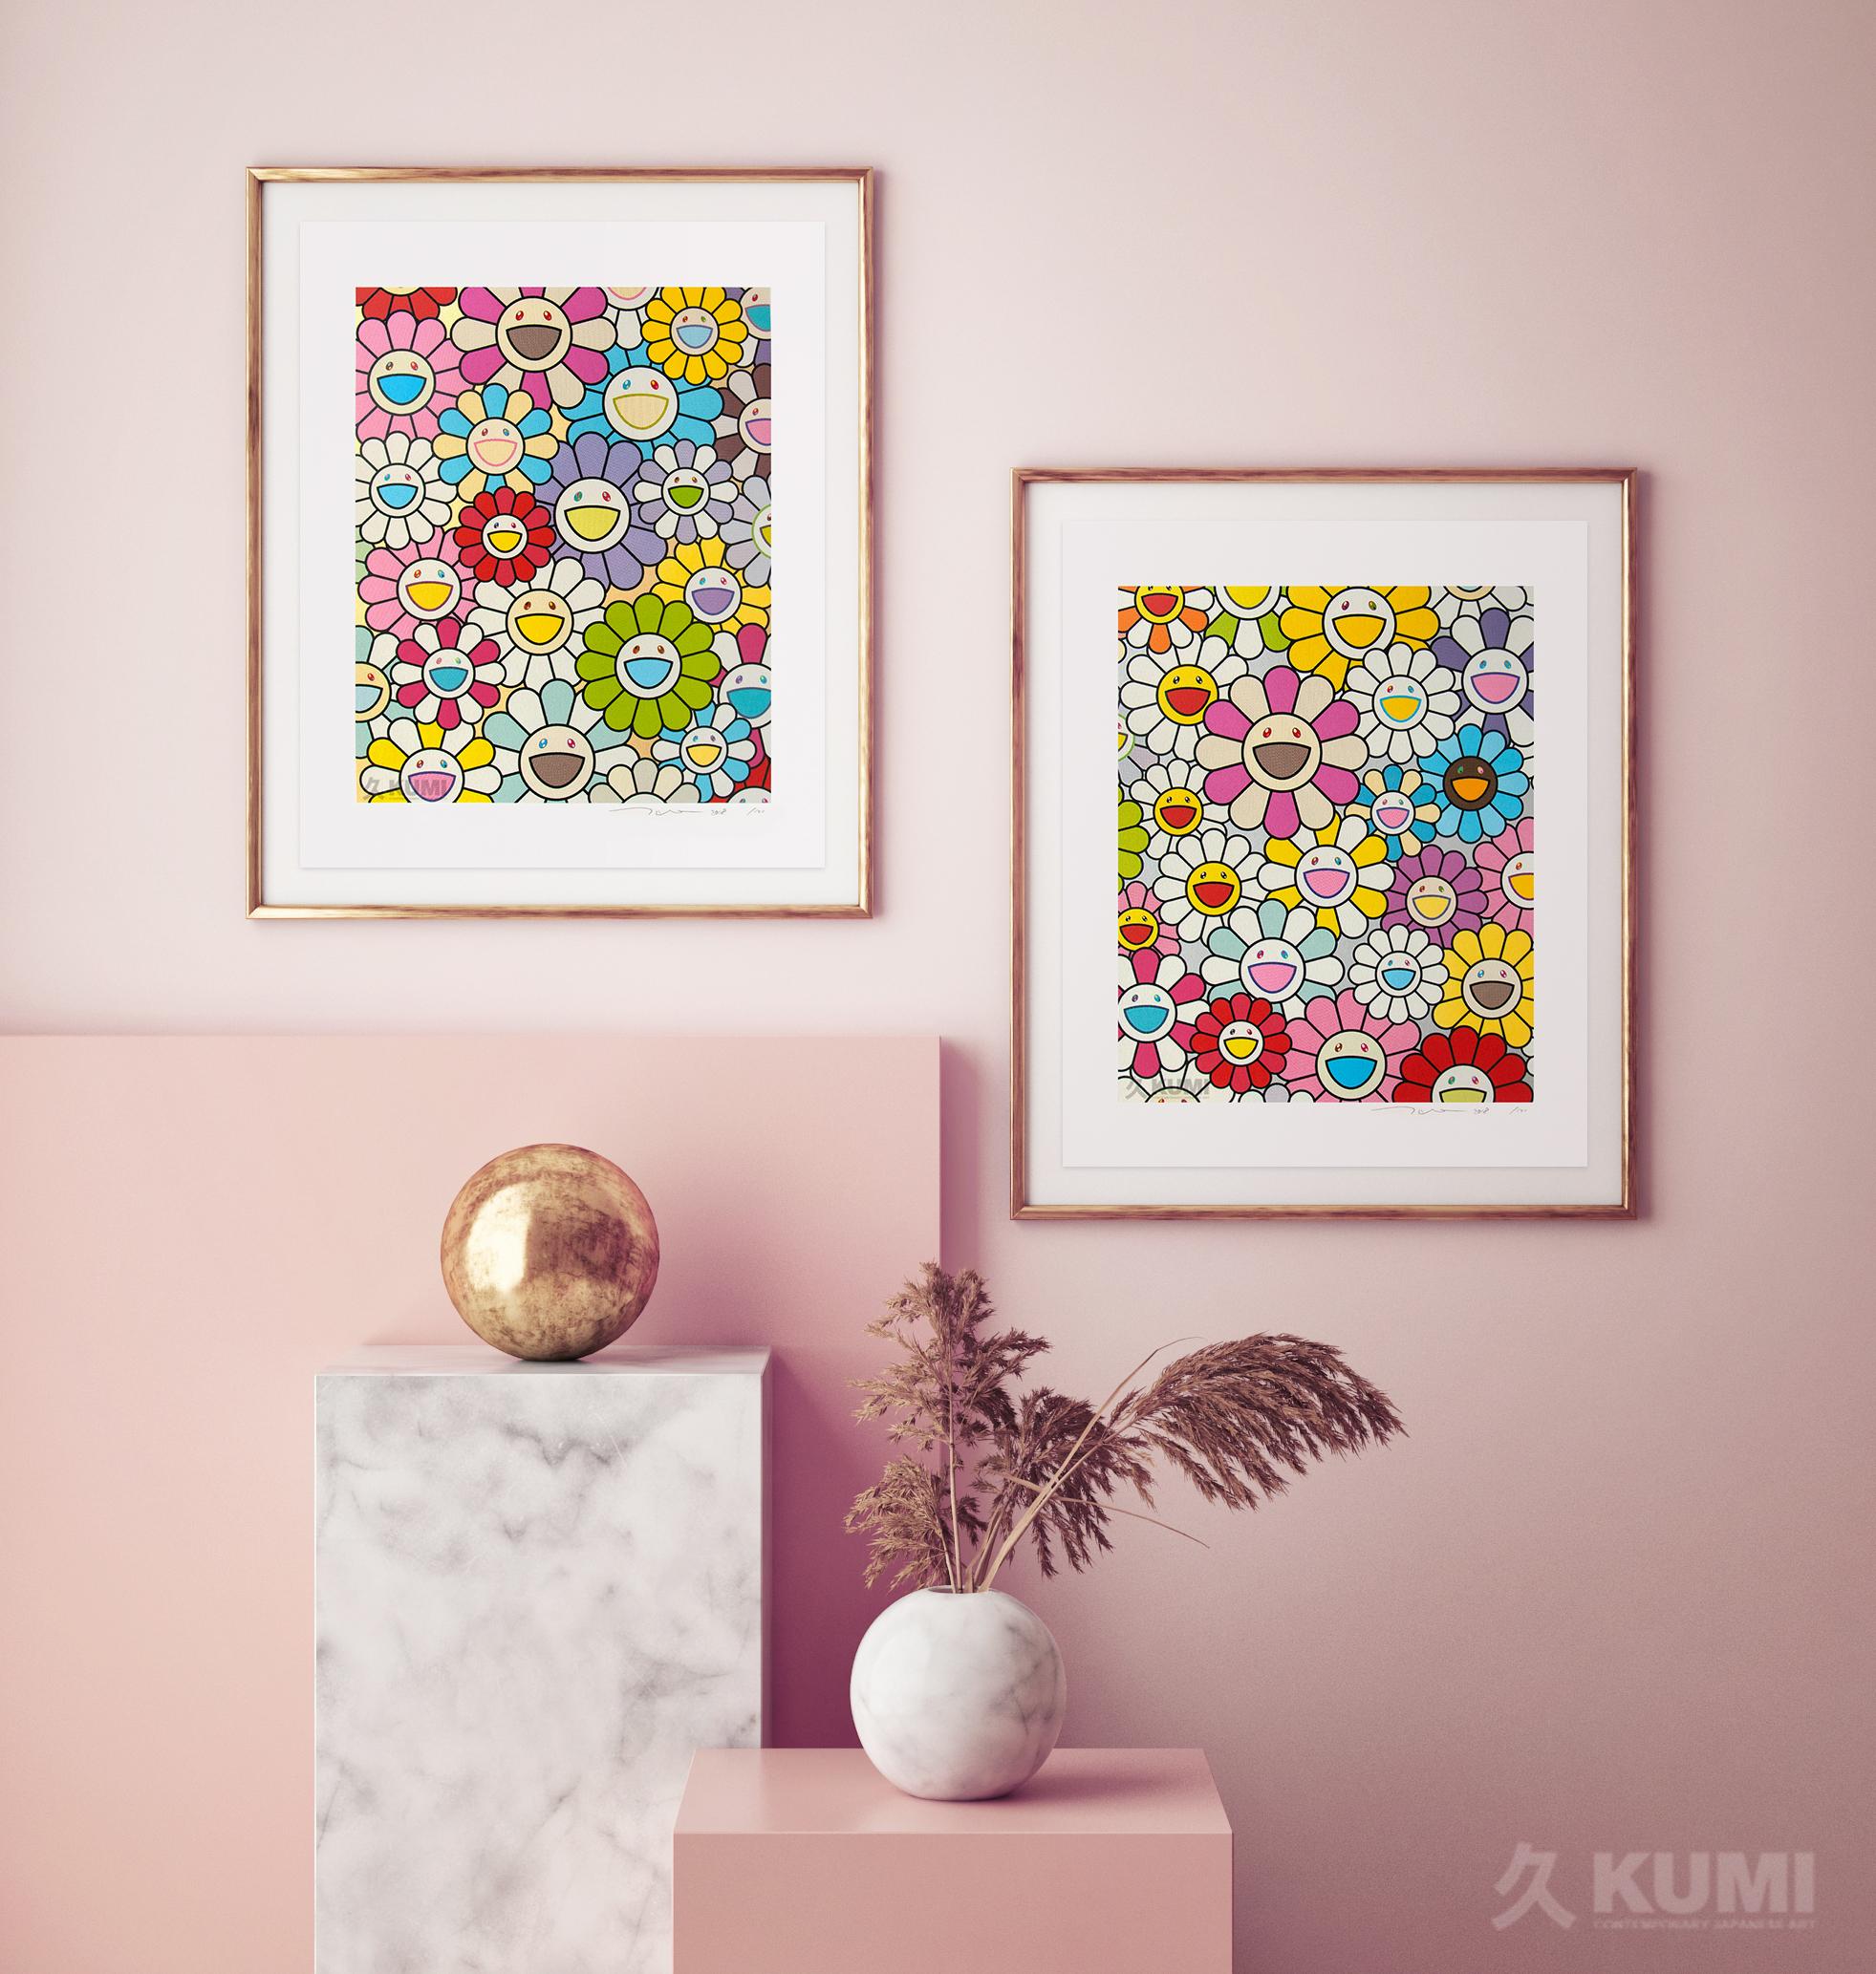 Ein kleines Blumengemälde: Rosa, Lila und viele andere Farben (Ed 100) Platin. – Print von Takashi Murakami